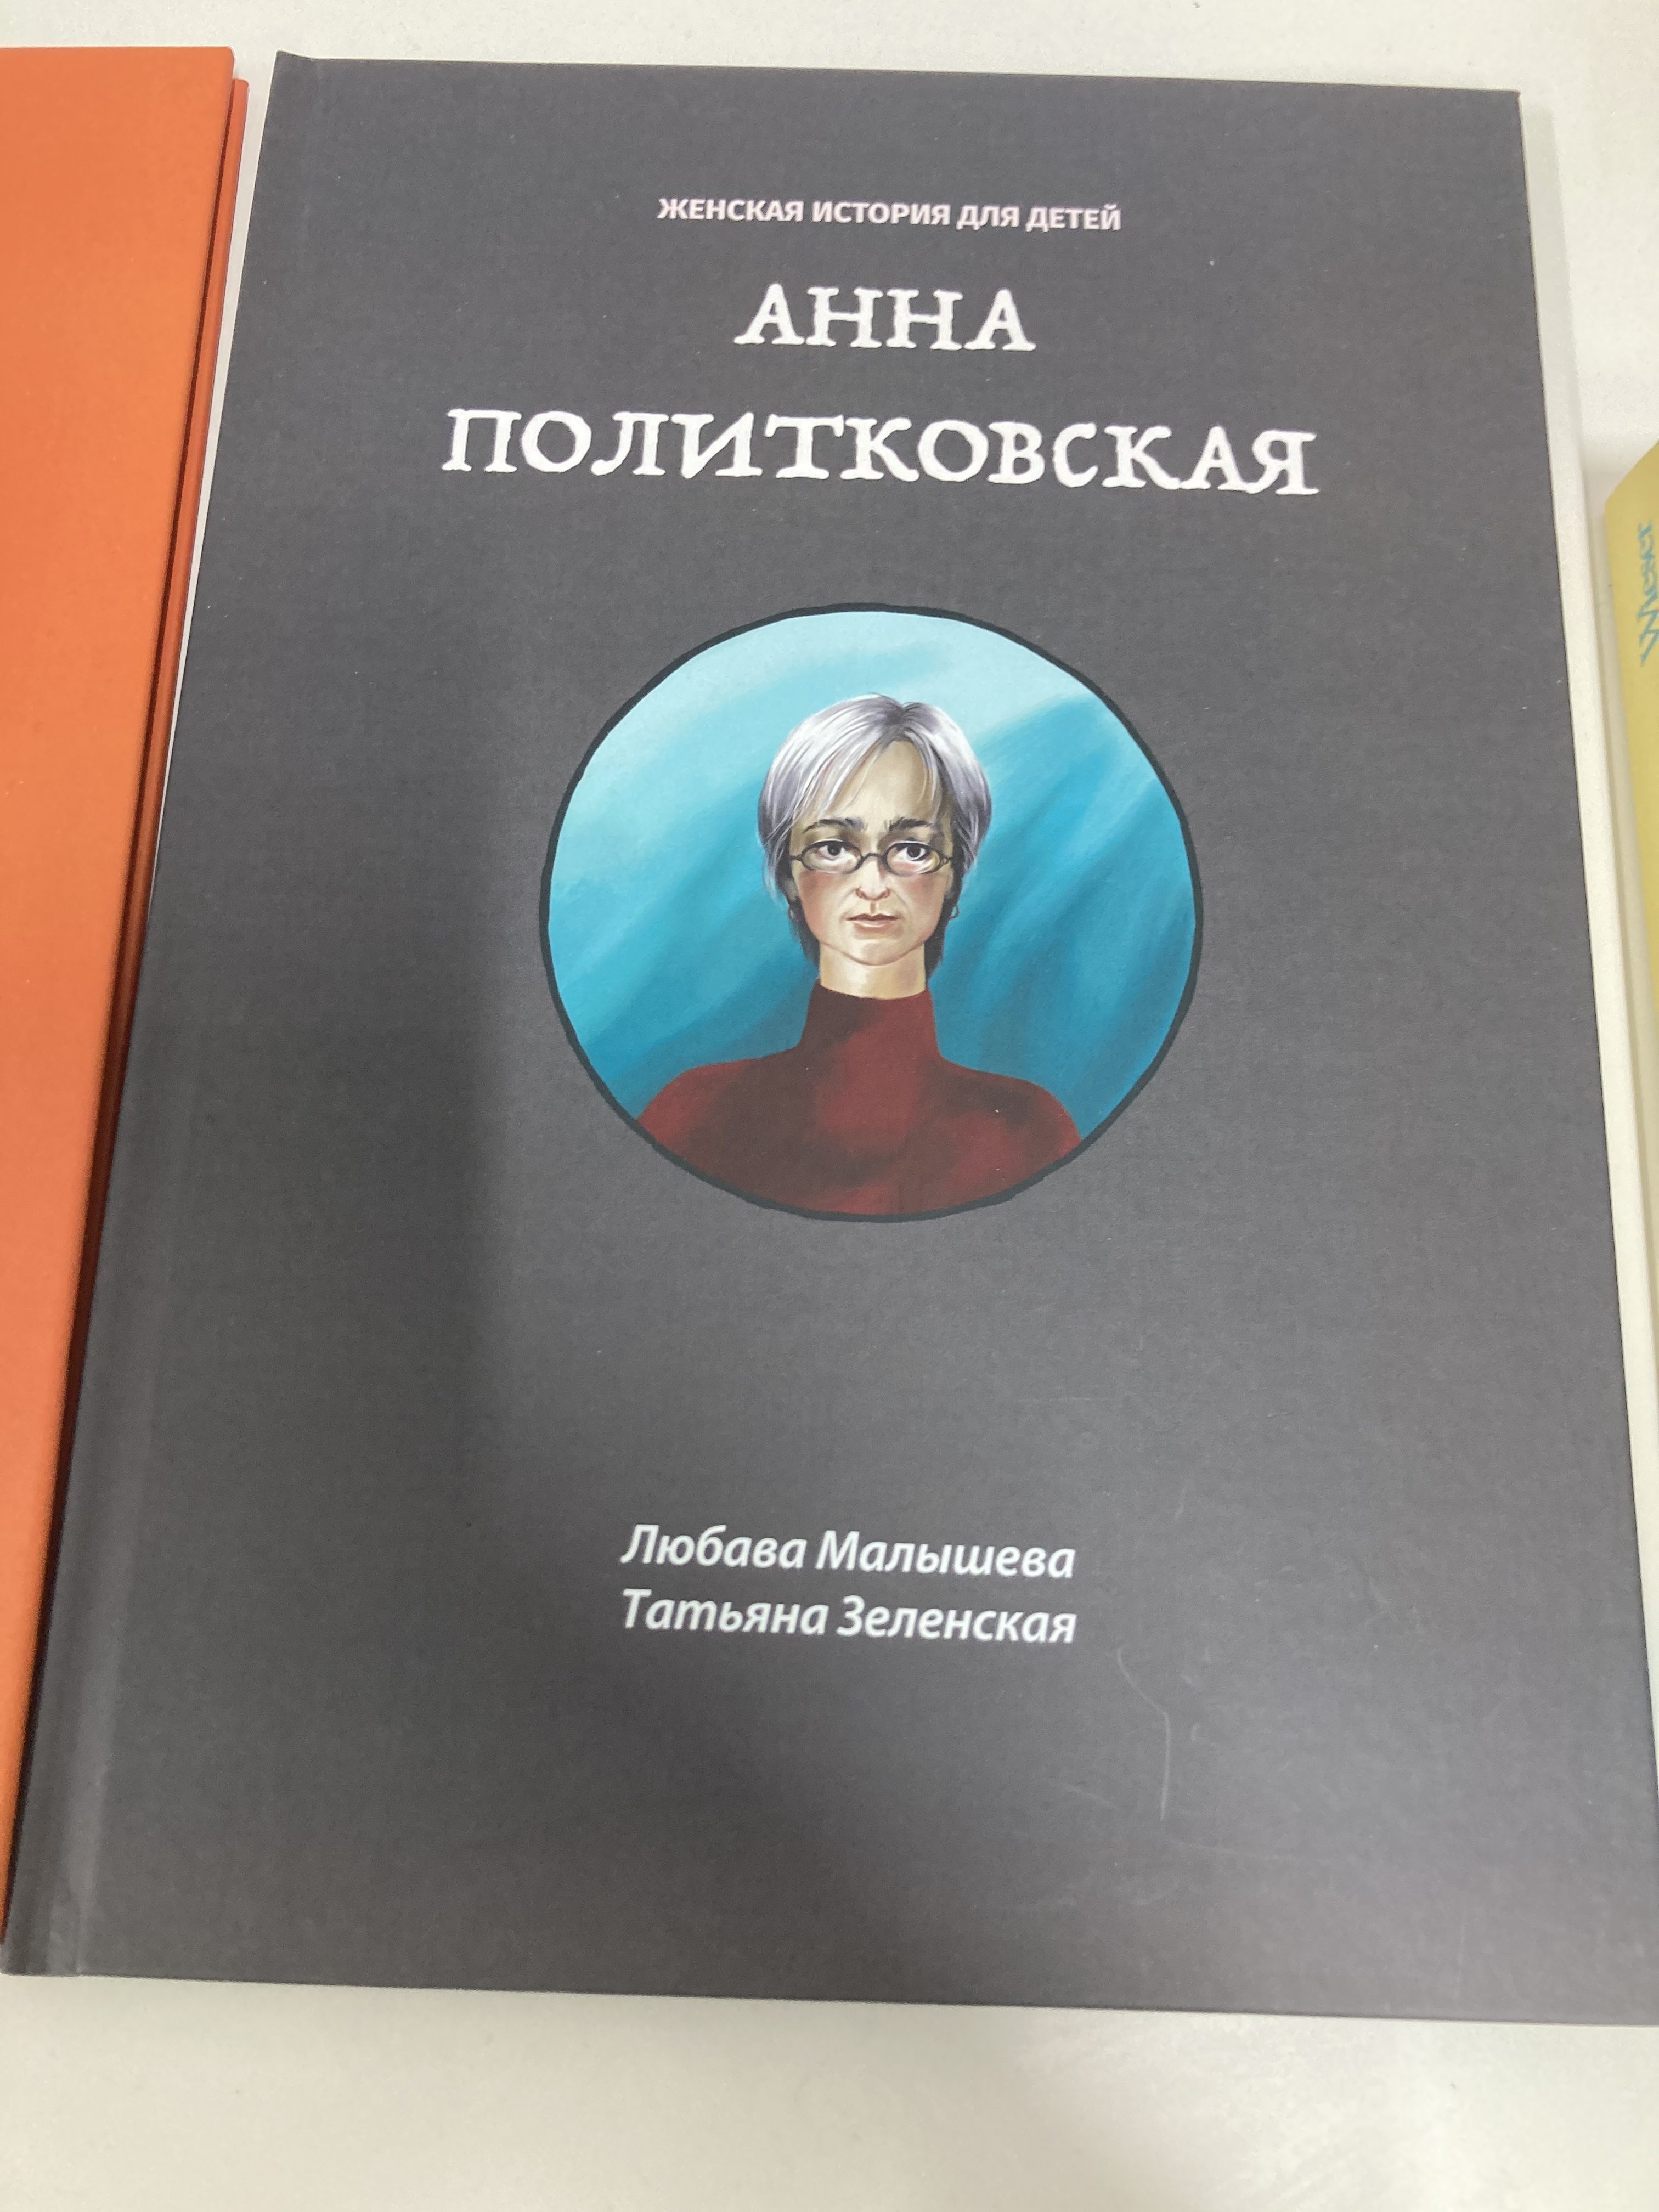 Детская книга про Политковскую